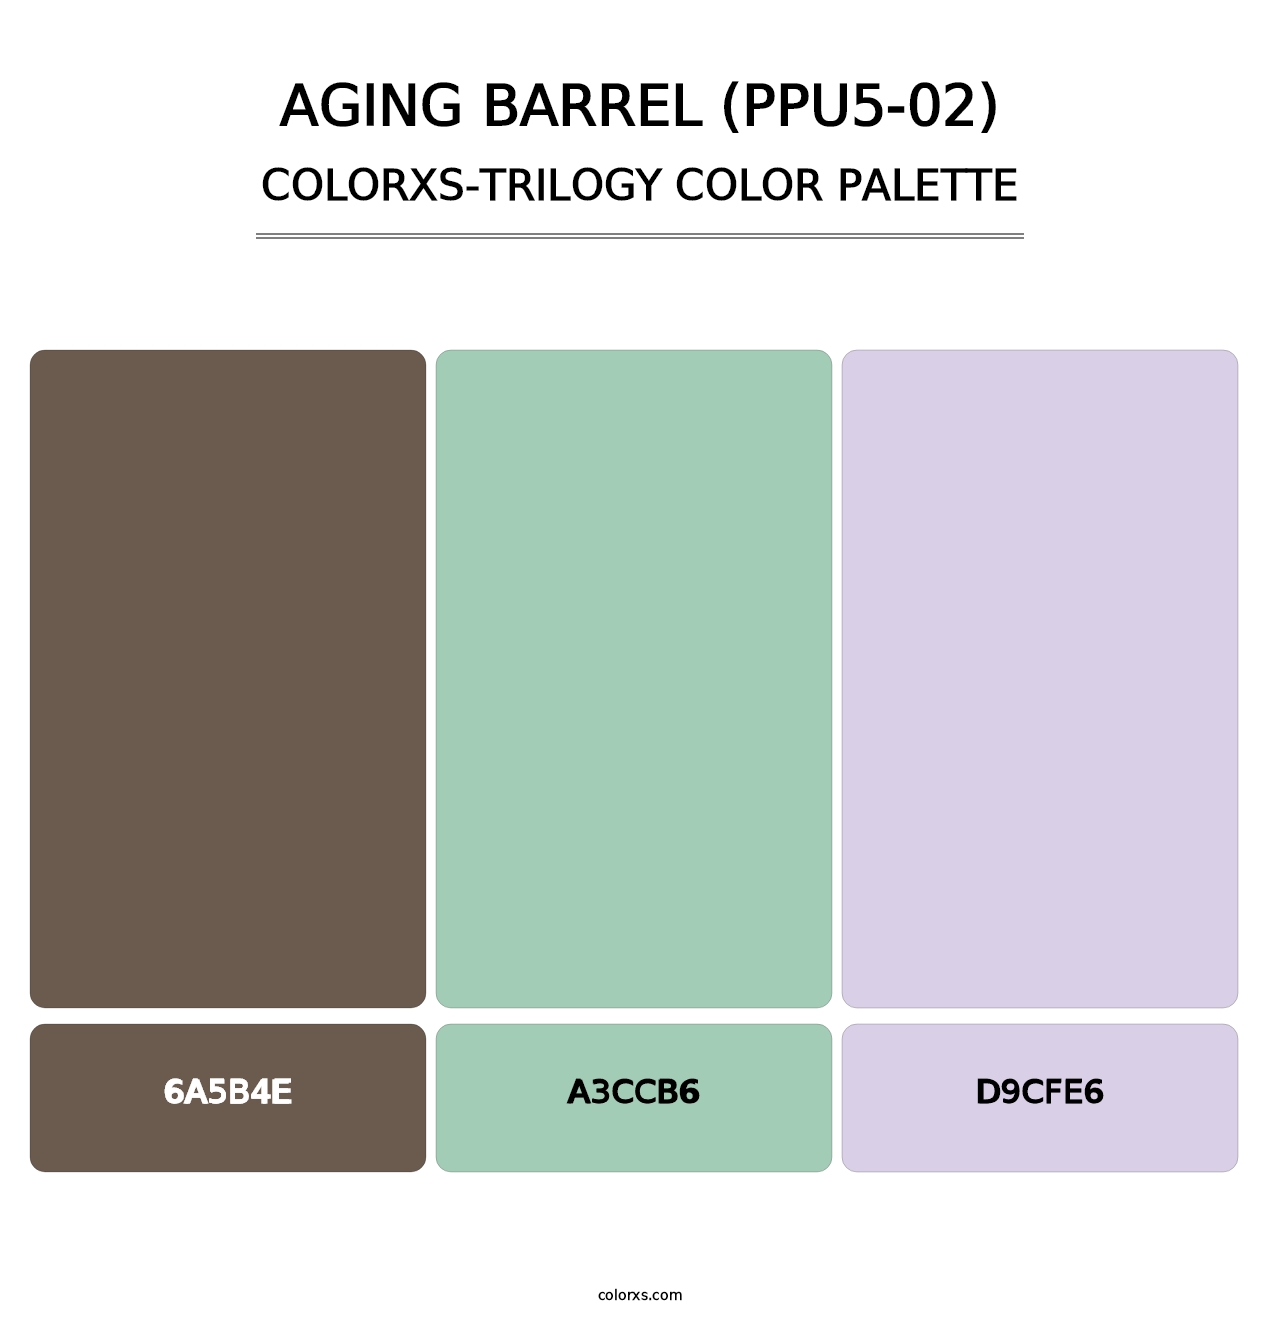 Aging Barrel (PPU5-02) - Colorxs Trilogy Palette